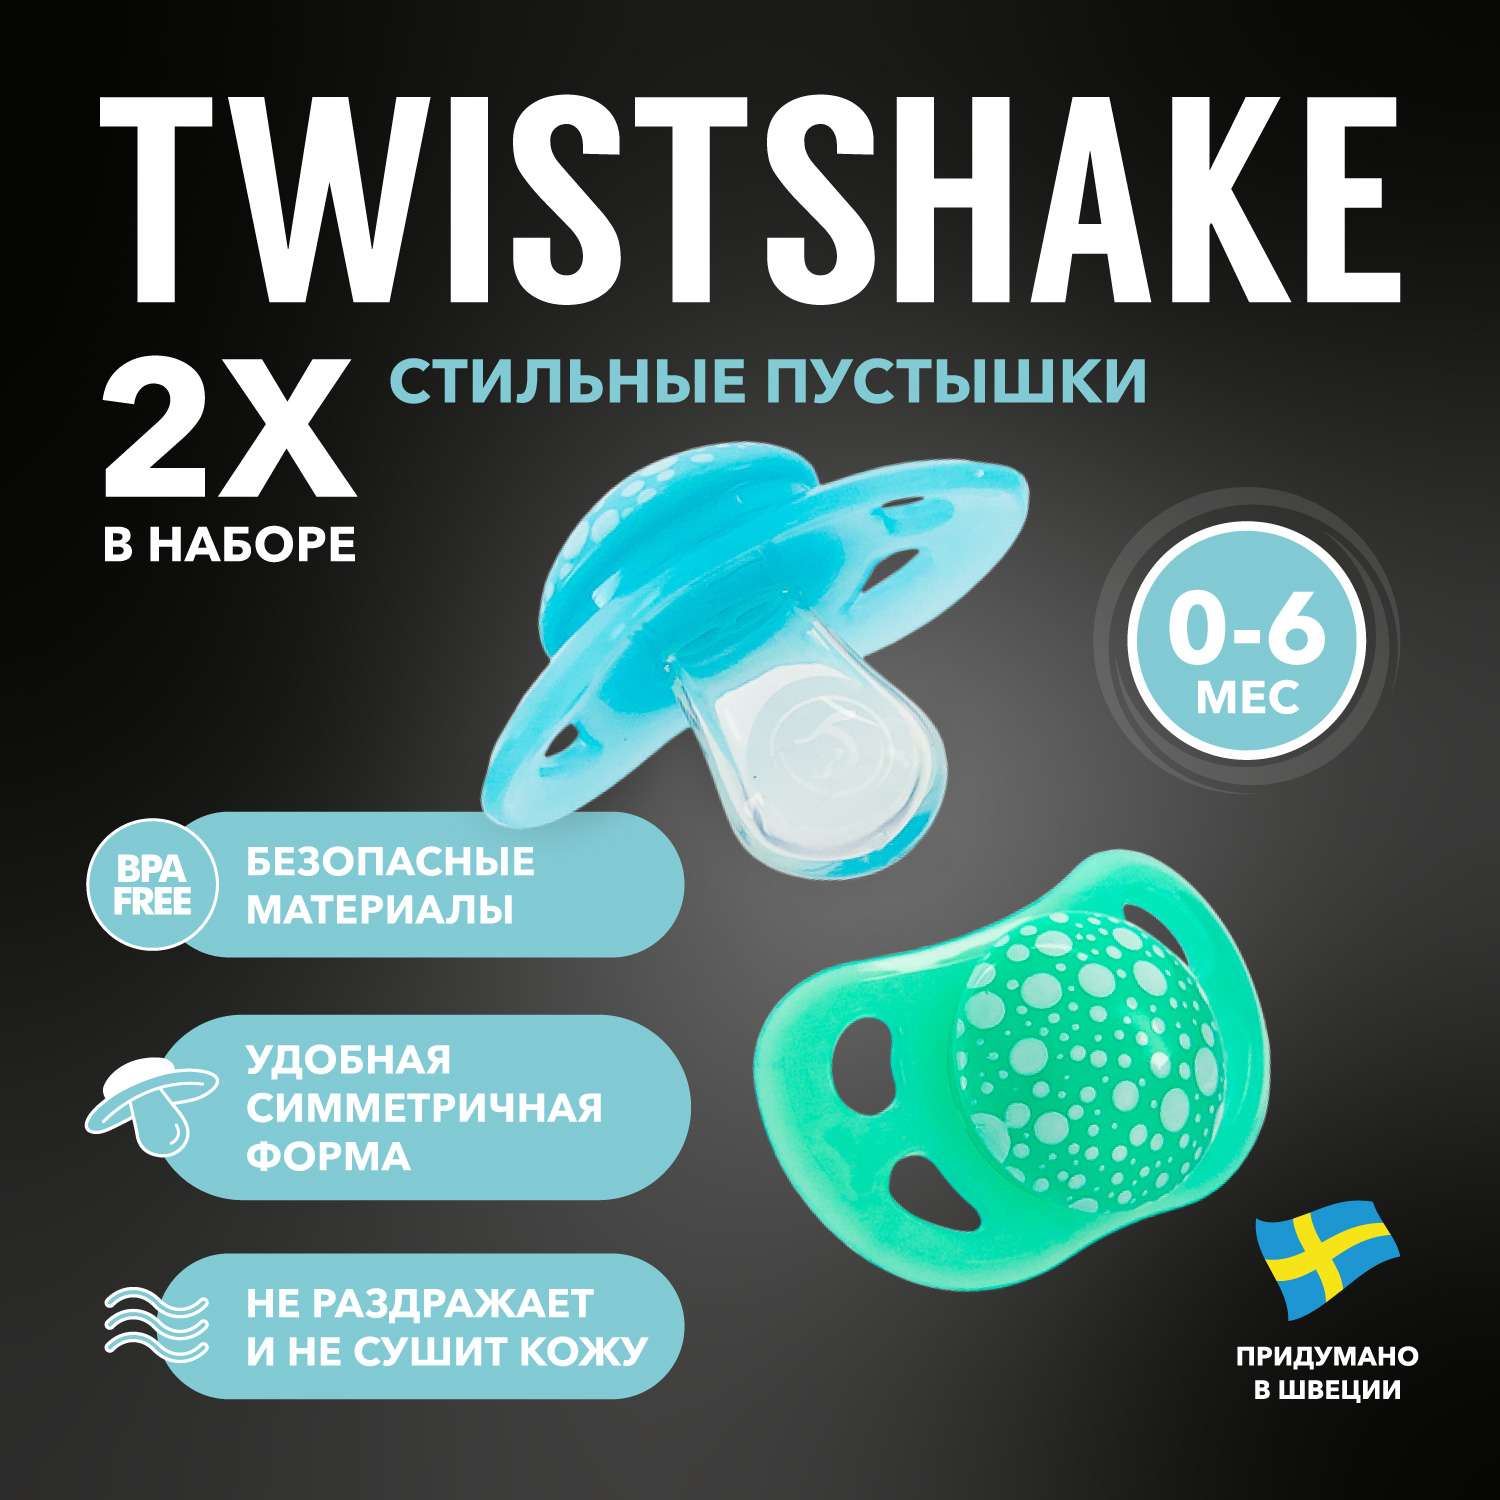 Пустышка Twistshake пастельный синий и зелёный 2 шт 0-6 мес - фото 1